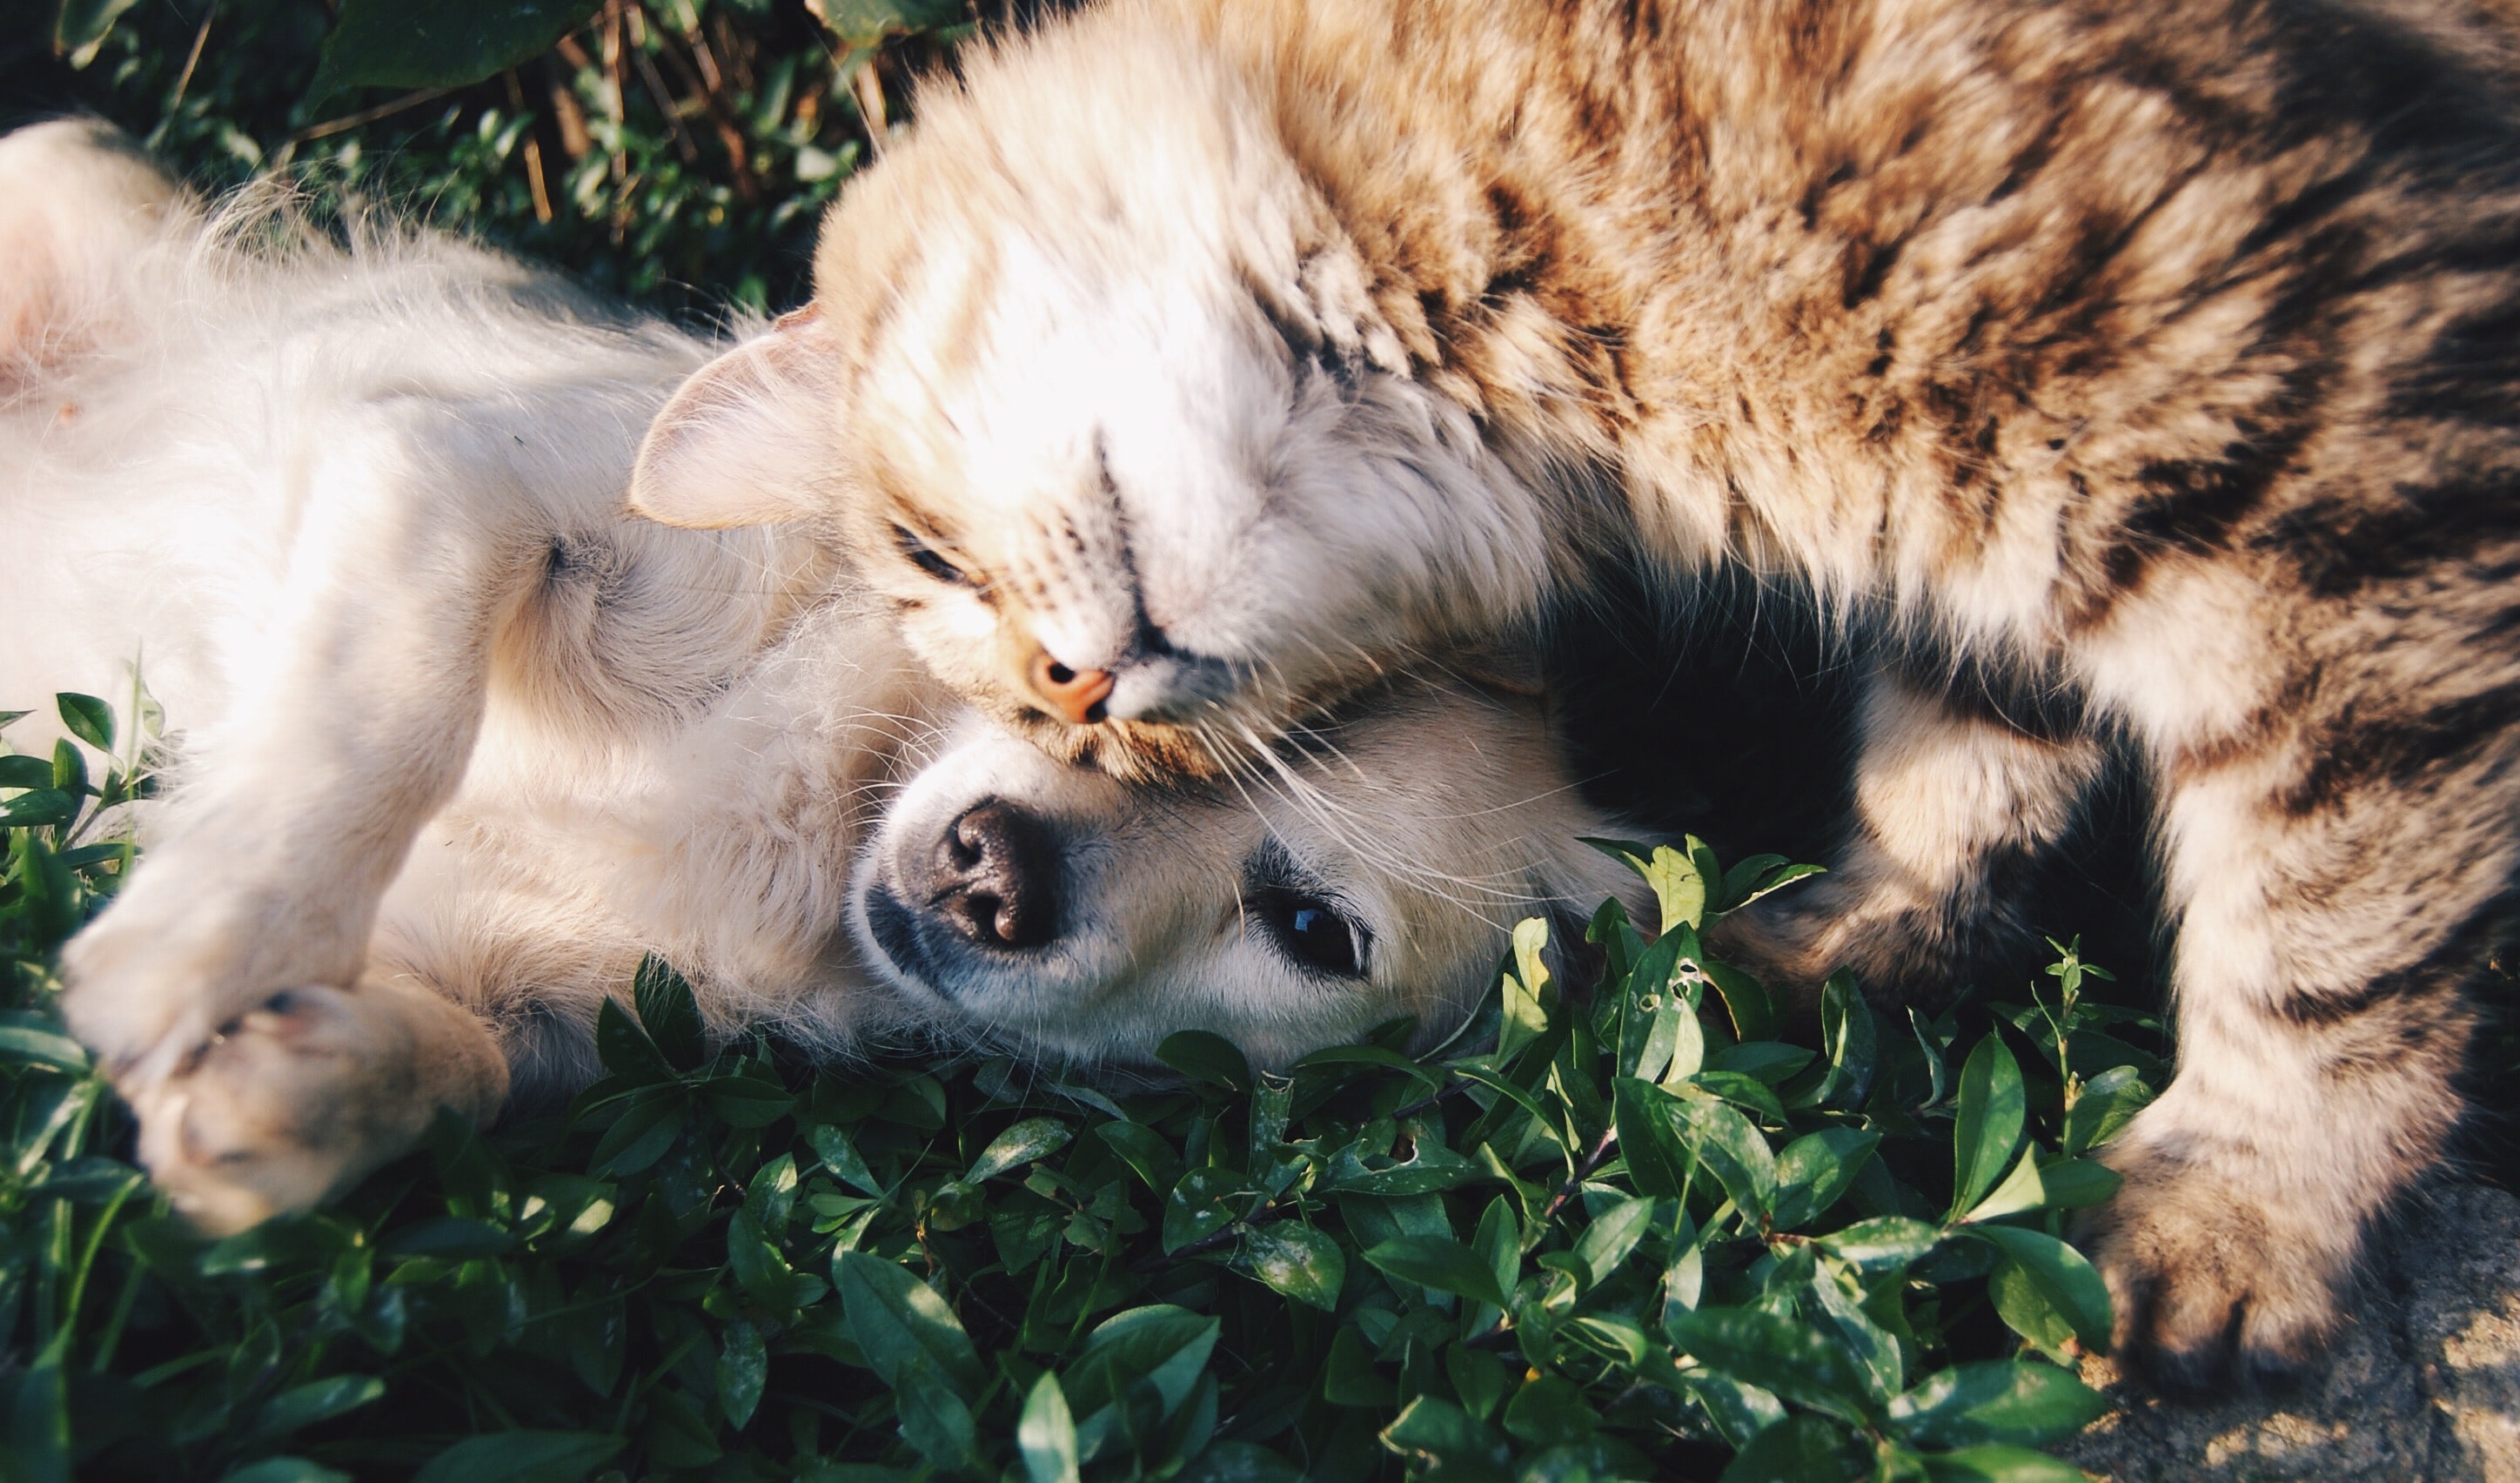 Coronavirus : Les chats et les chiens devraient Ãªtre vaccinÃ©s, selon des experts - CNEWS